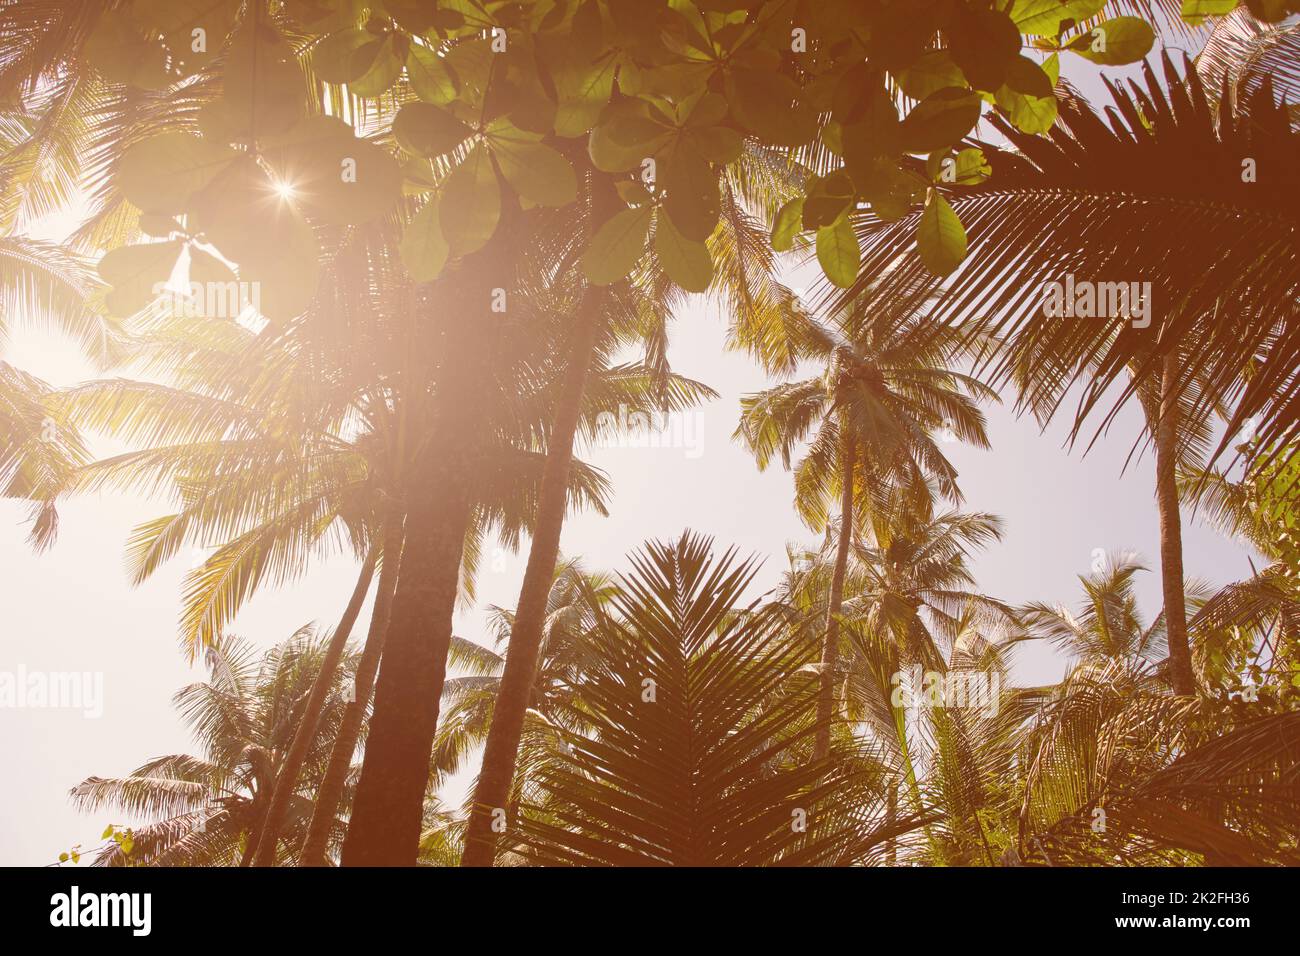 Île rêvant. Image de style rétro d'un éclat de soleil qui coule à travers le sommet des arbres de palmiers tropicaux. Banque D'Images